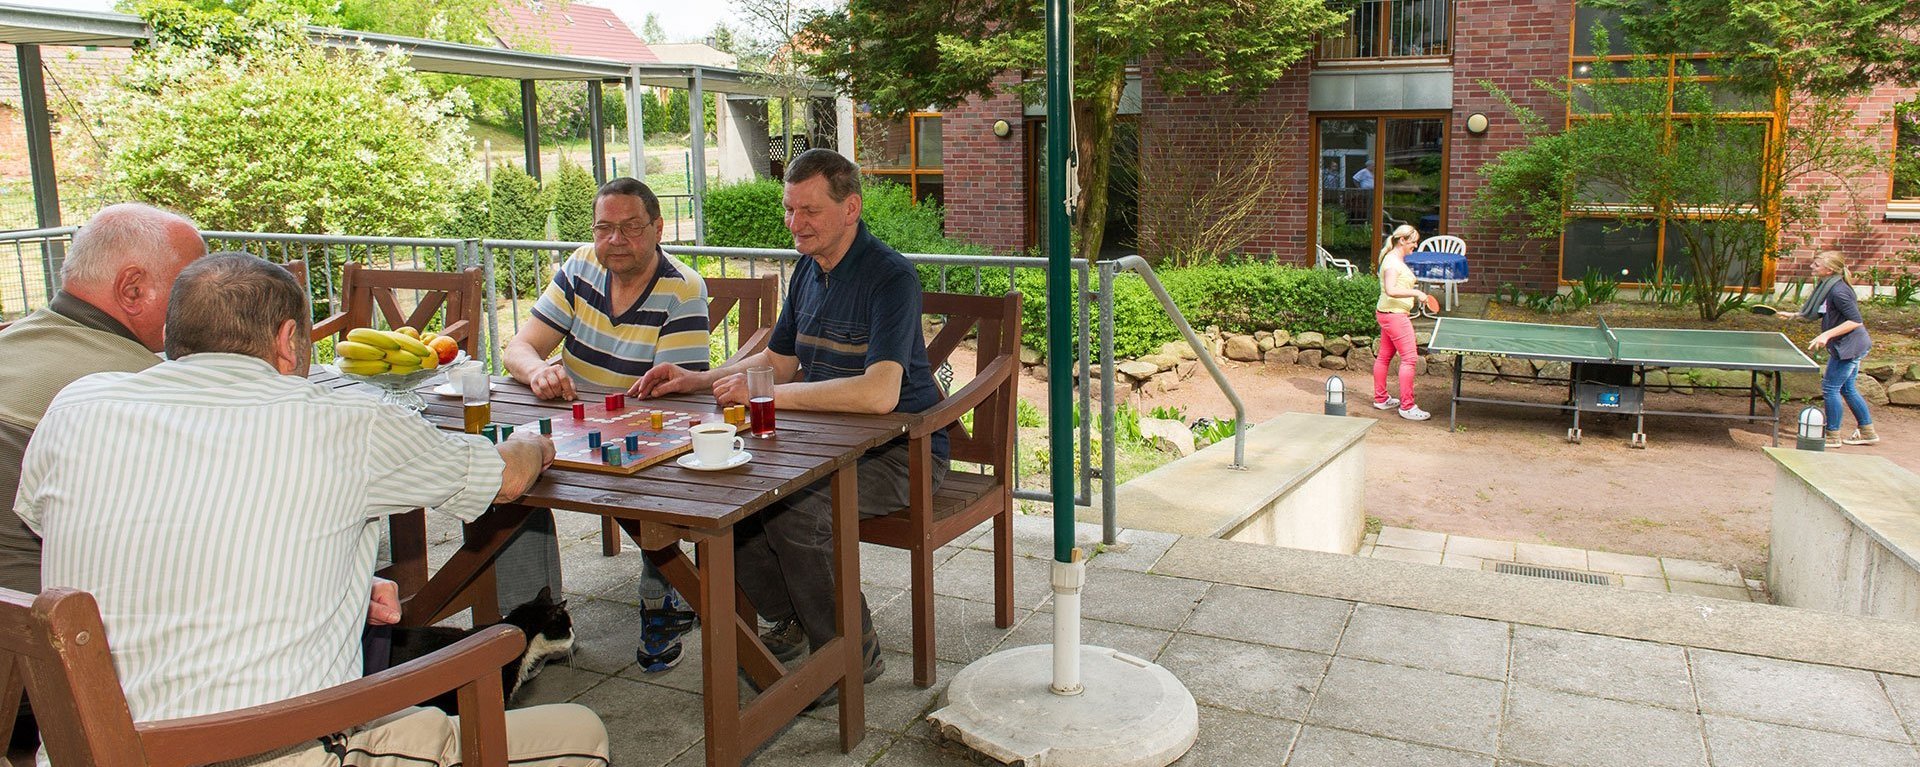 Vier ältere Männer spielen auf der Terasse "Mensch ärgere dich nicht" - im Hintergrund zwei Frauen spielen Tischtennis